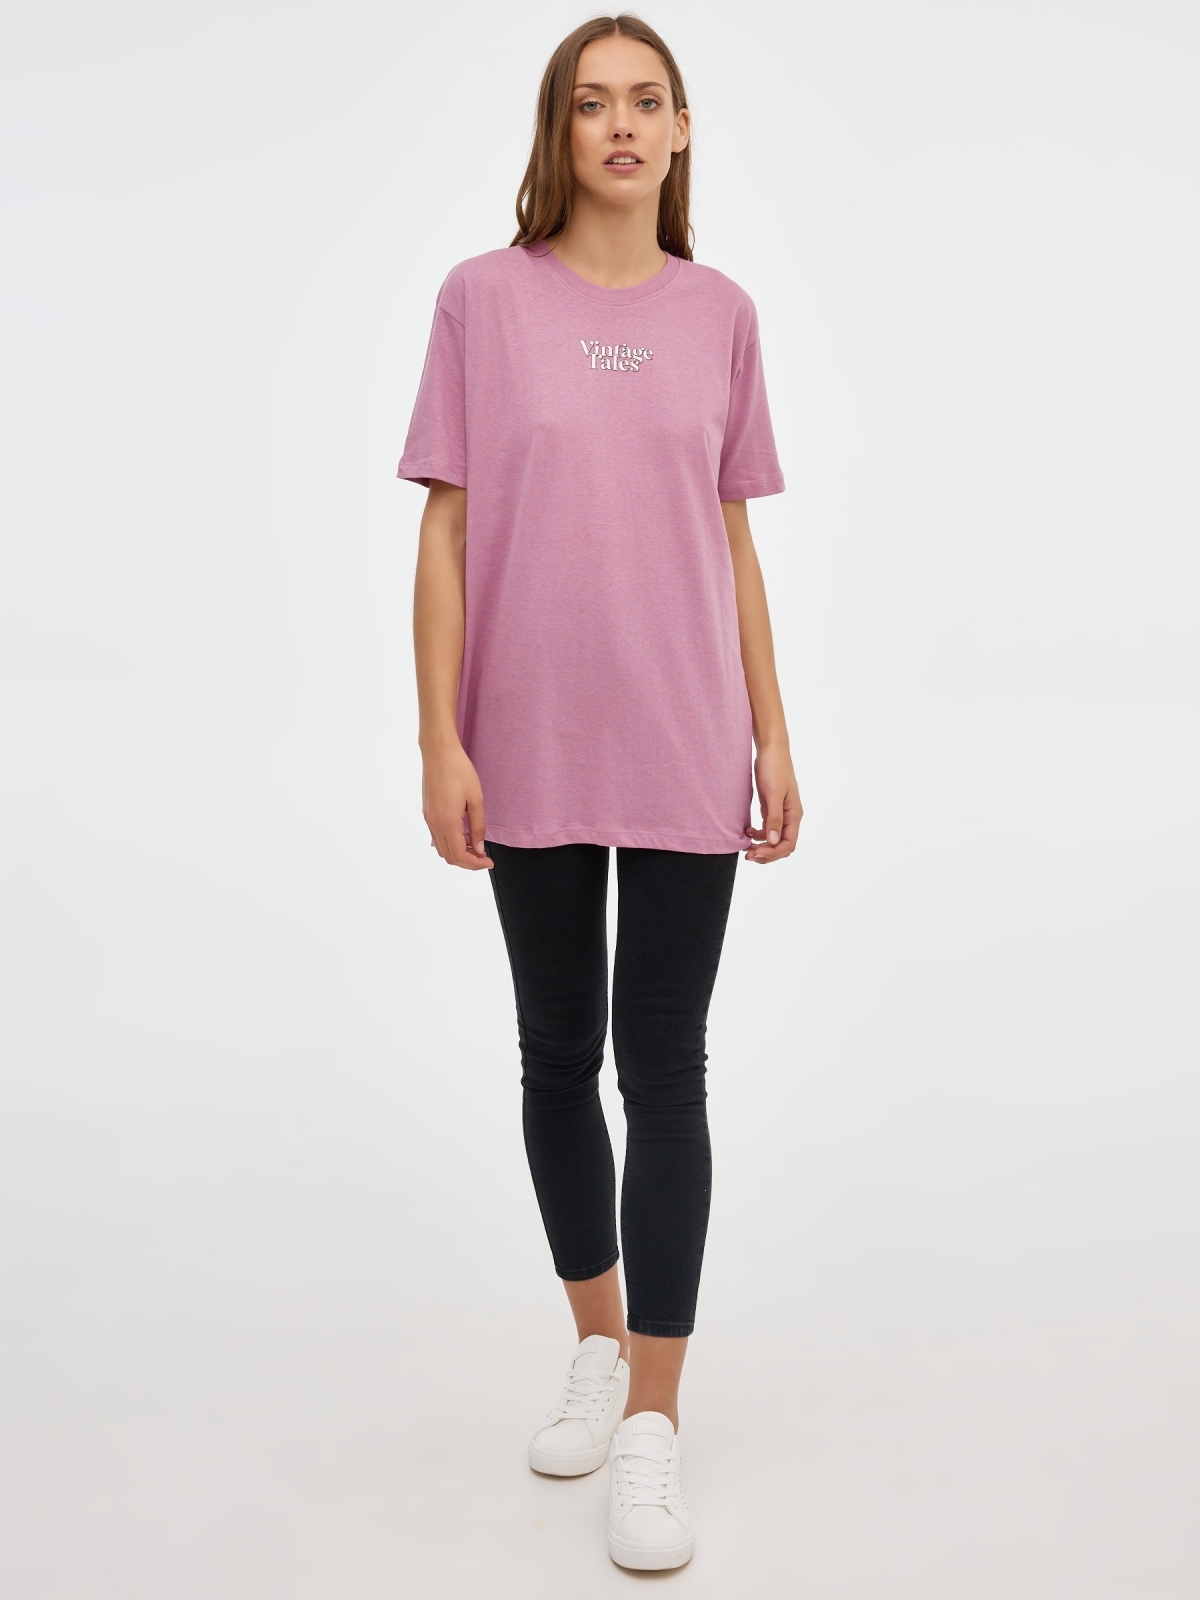 T-shirt da Sereia sobredimensionada rosa vista geral frontal